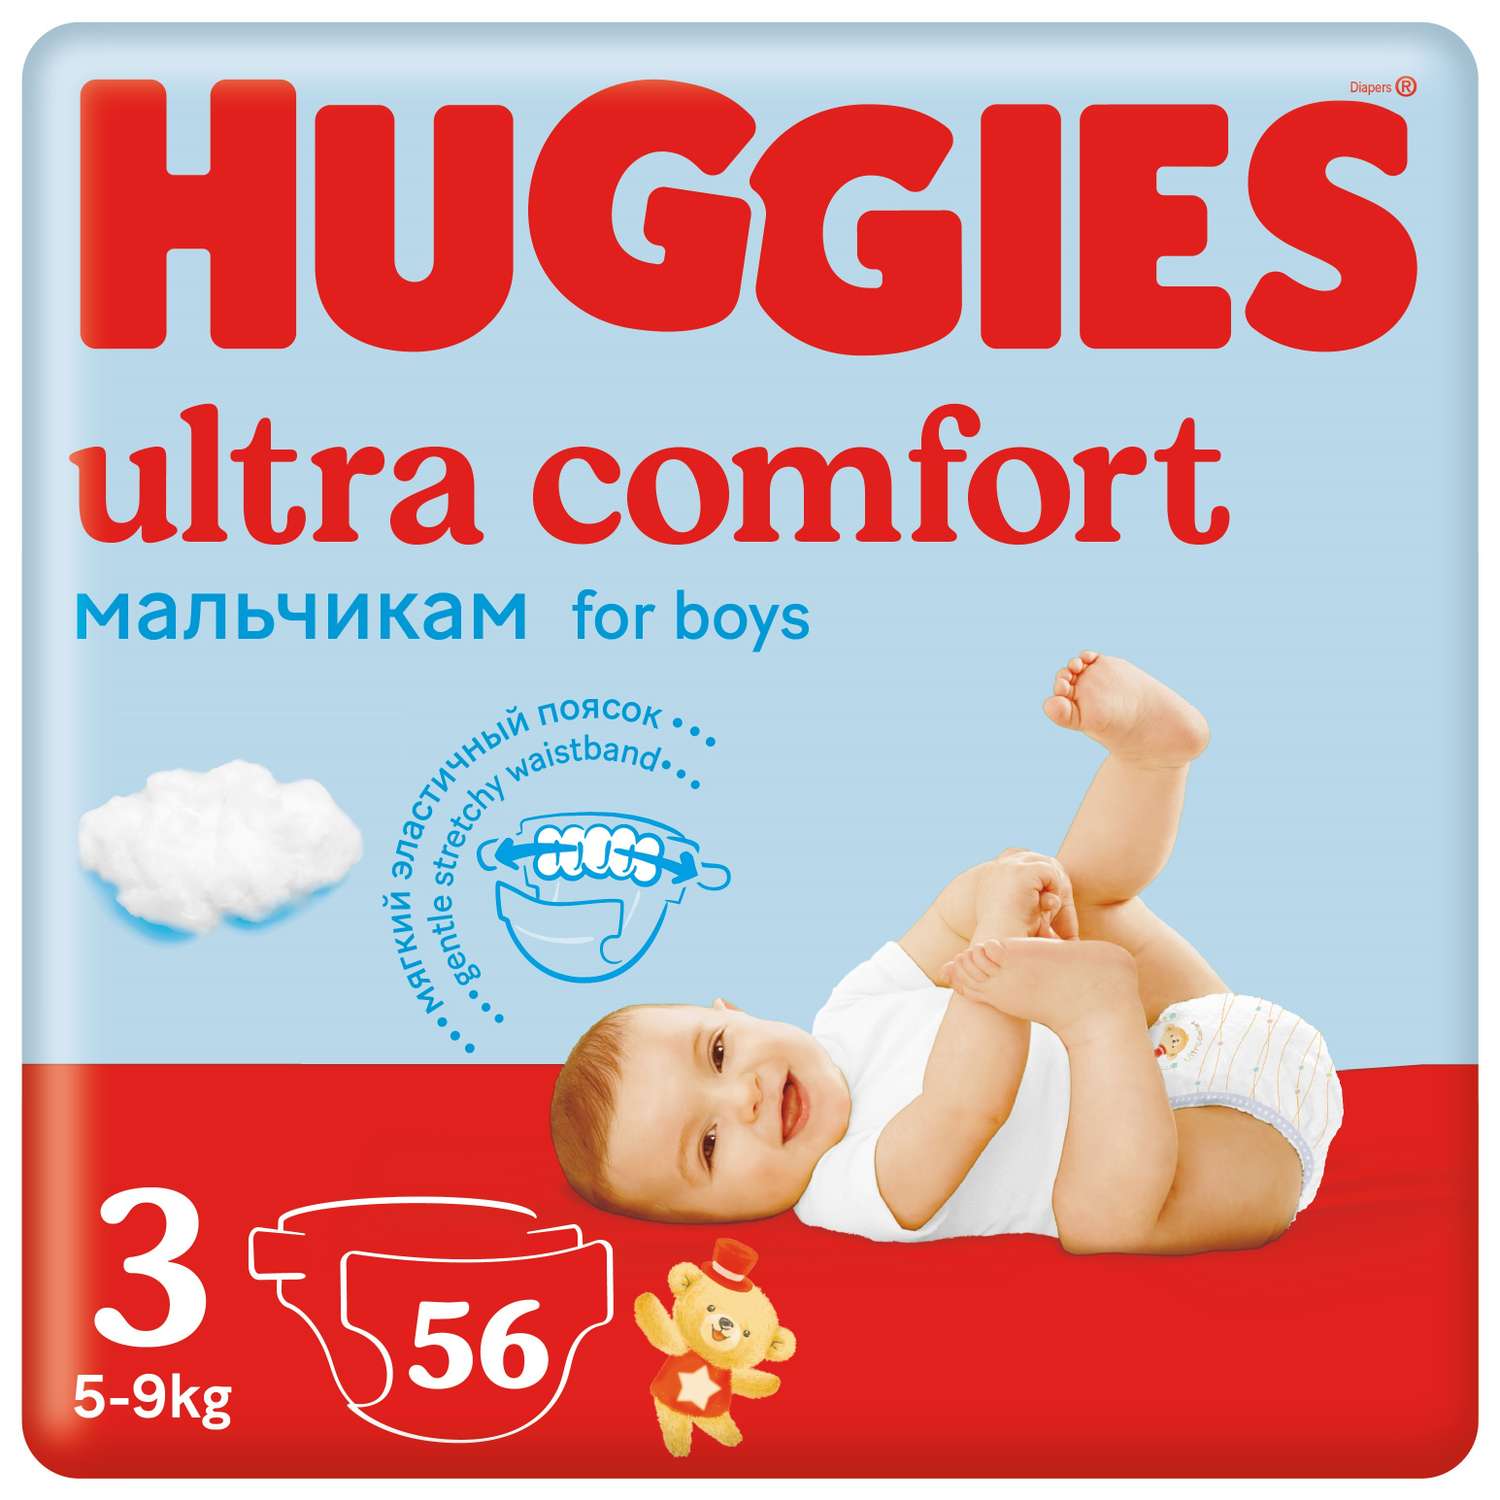 Подгузники Huggies Ultra Comfort для мальчиков 3 5-9кг 56 шт - фото 1